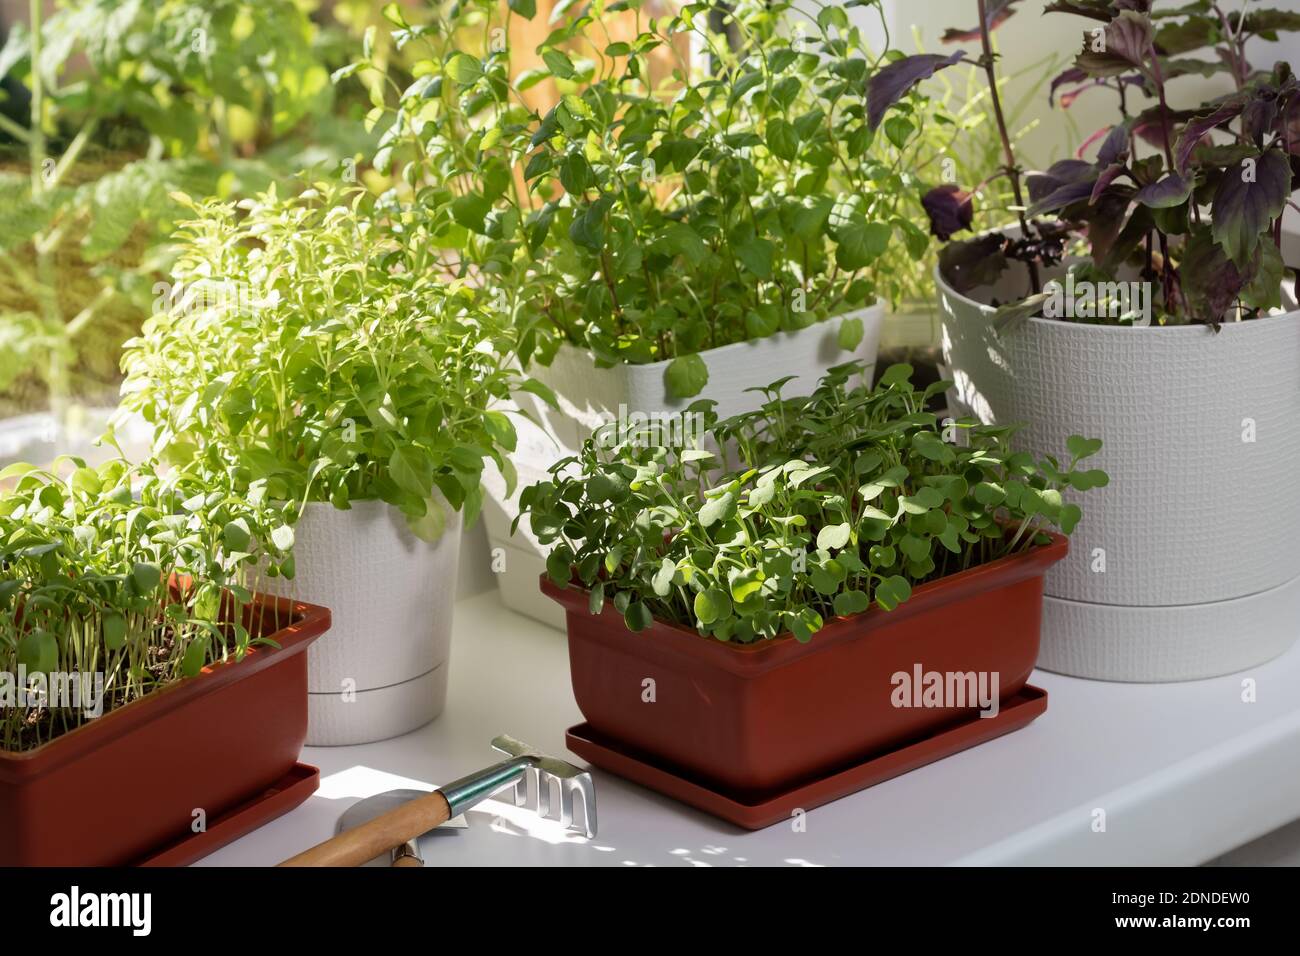 Divers légumes comestibles poussent dans des pots sur le rebord de la fenêtre. Croissance des vitamines vertes saines à la maison Banque D'Images